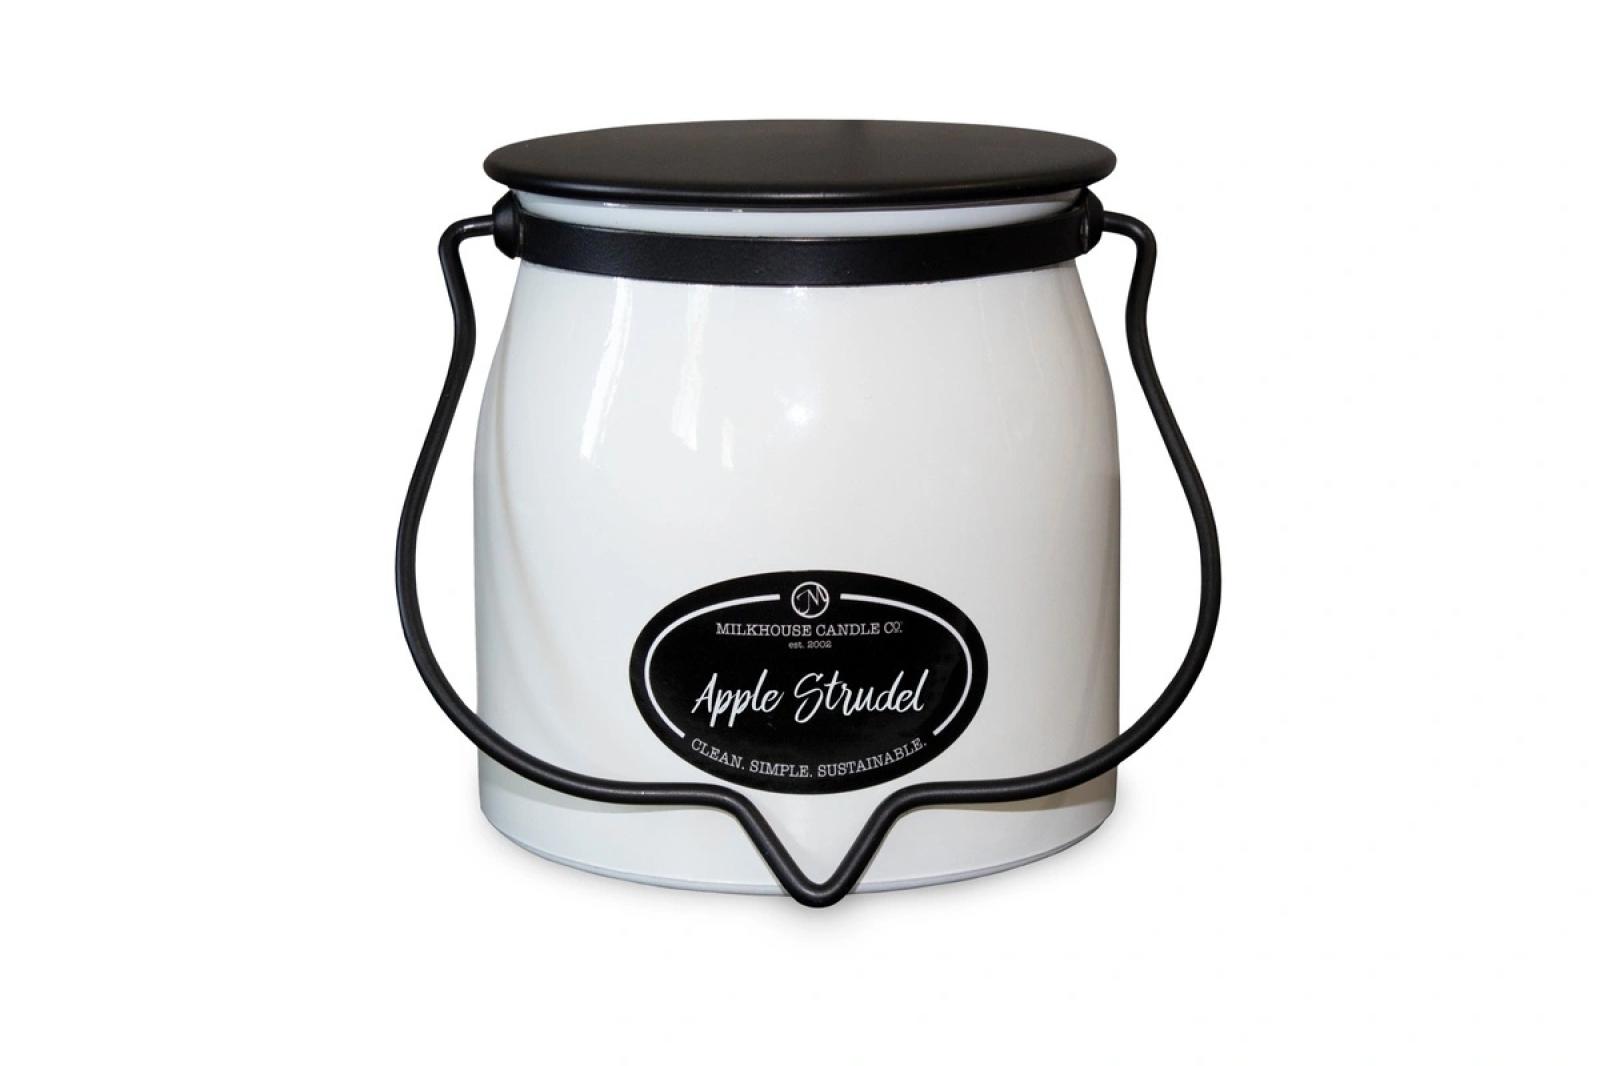 Milkhouse Apple Strudel Butter Jar Candle